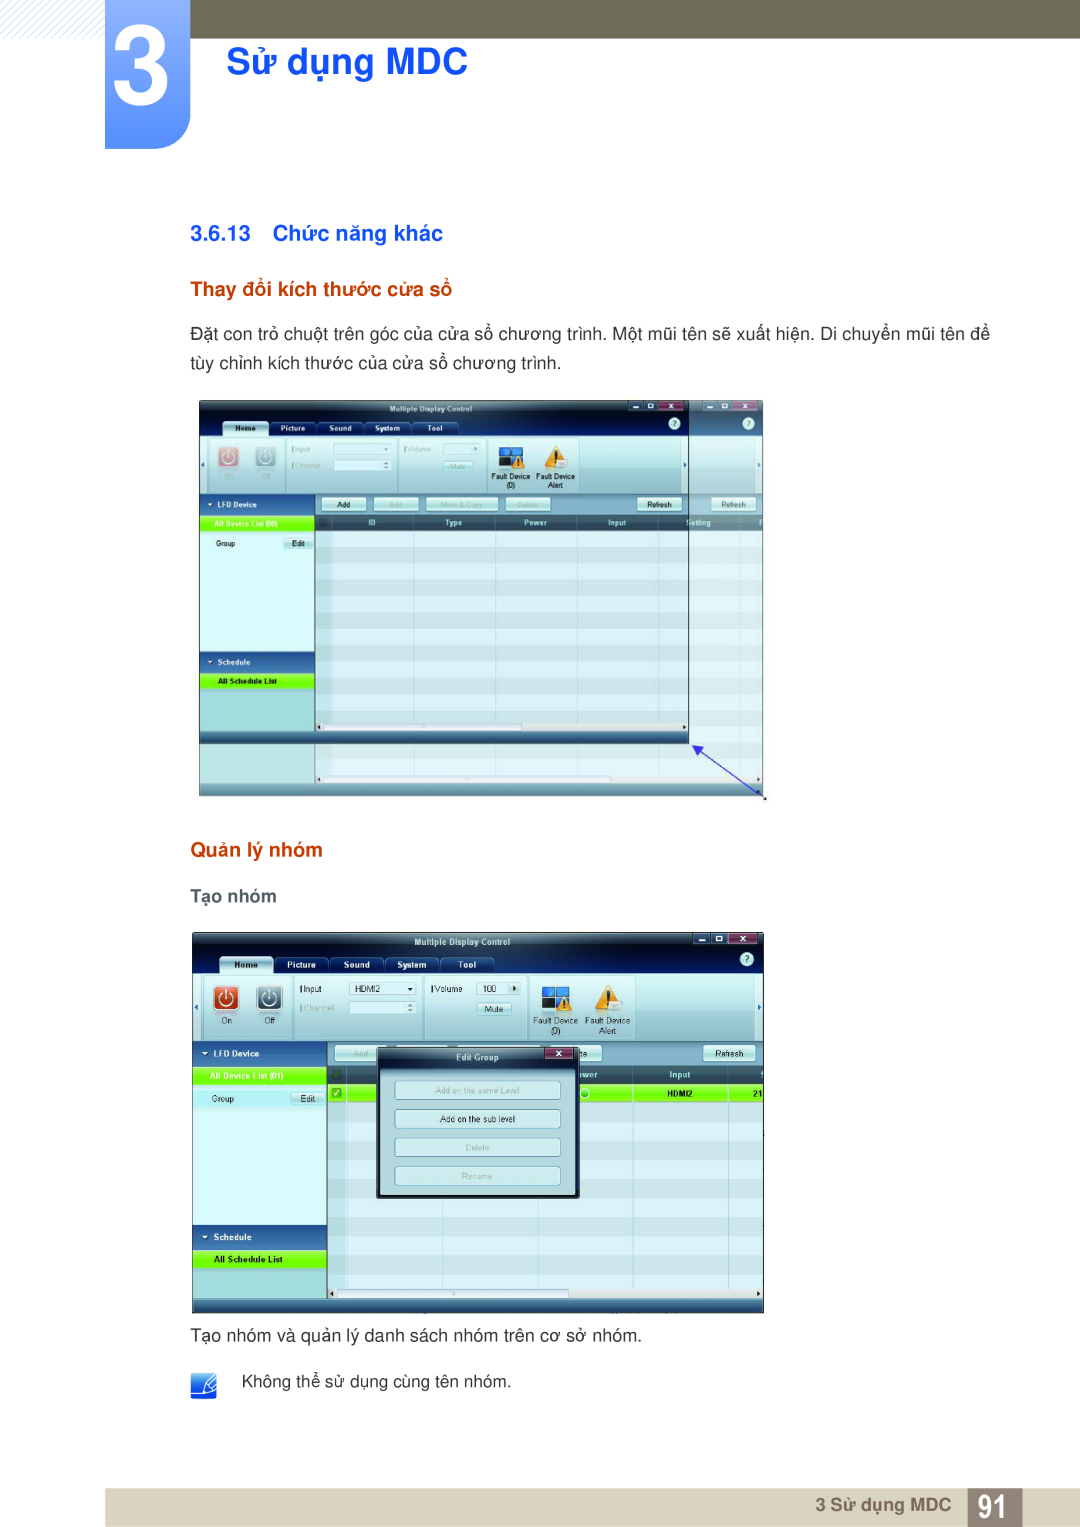 Samsung LH55MEPLGC/XY manual 3.6.13 Chức năng khác, 3 Sử dụng MDC, Thay đổi kích thước cửa sổ, Quản lý nhóm, Tạo nhóm 